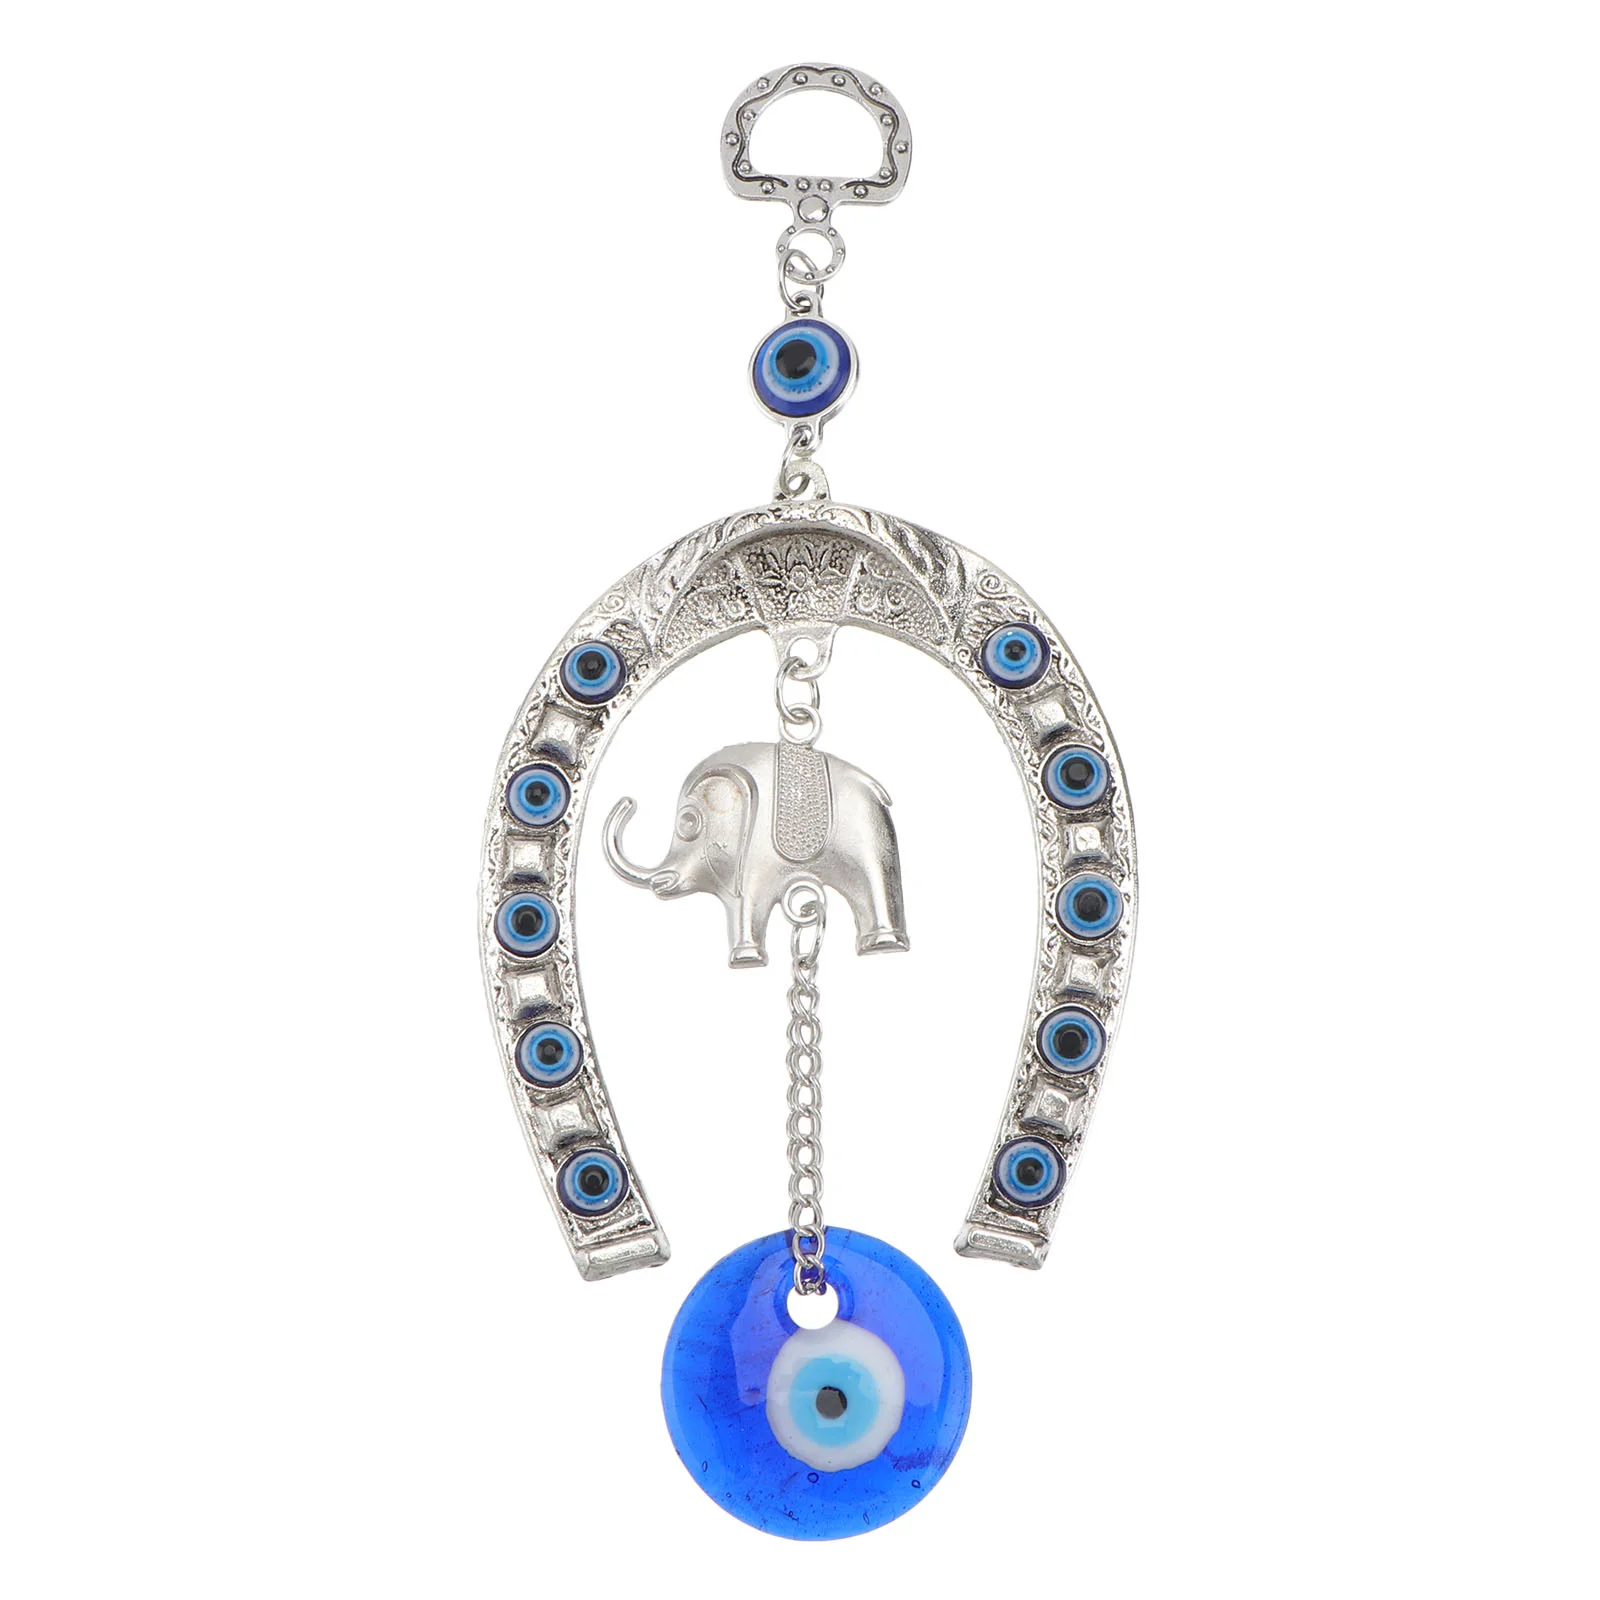 

Eye Evil Hanging Blue Ornament Elephant Decor Pendant Wall Turkish Car Charm Lucky Horseshoe Amulet Eyes Blessing Protection